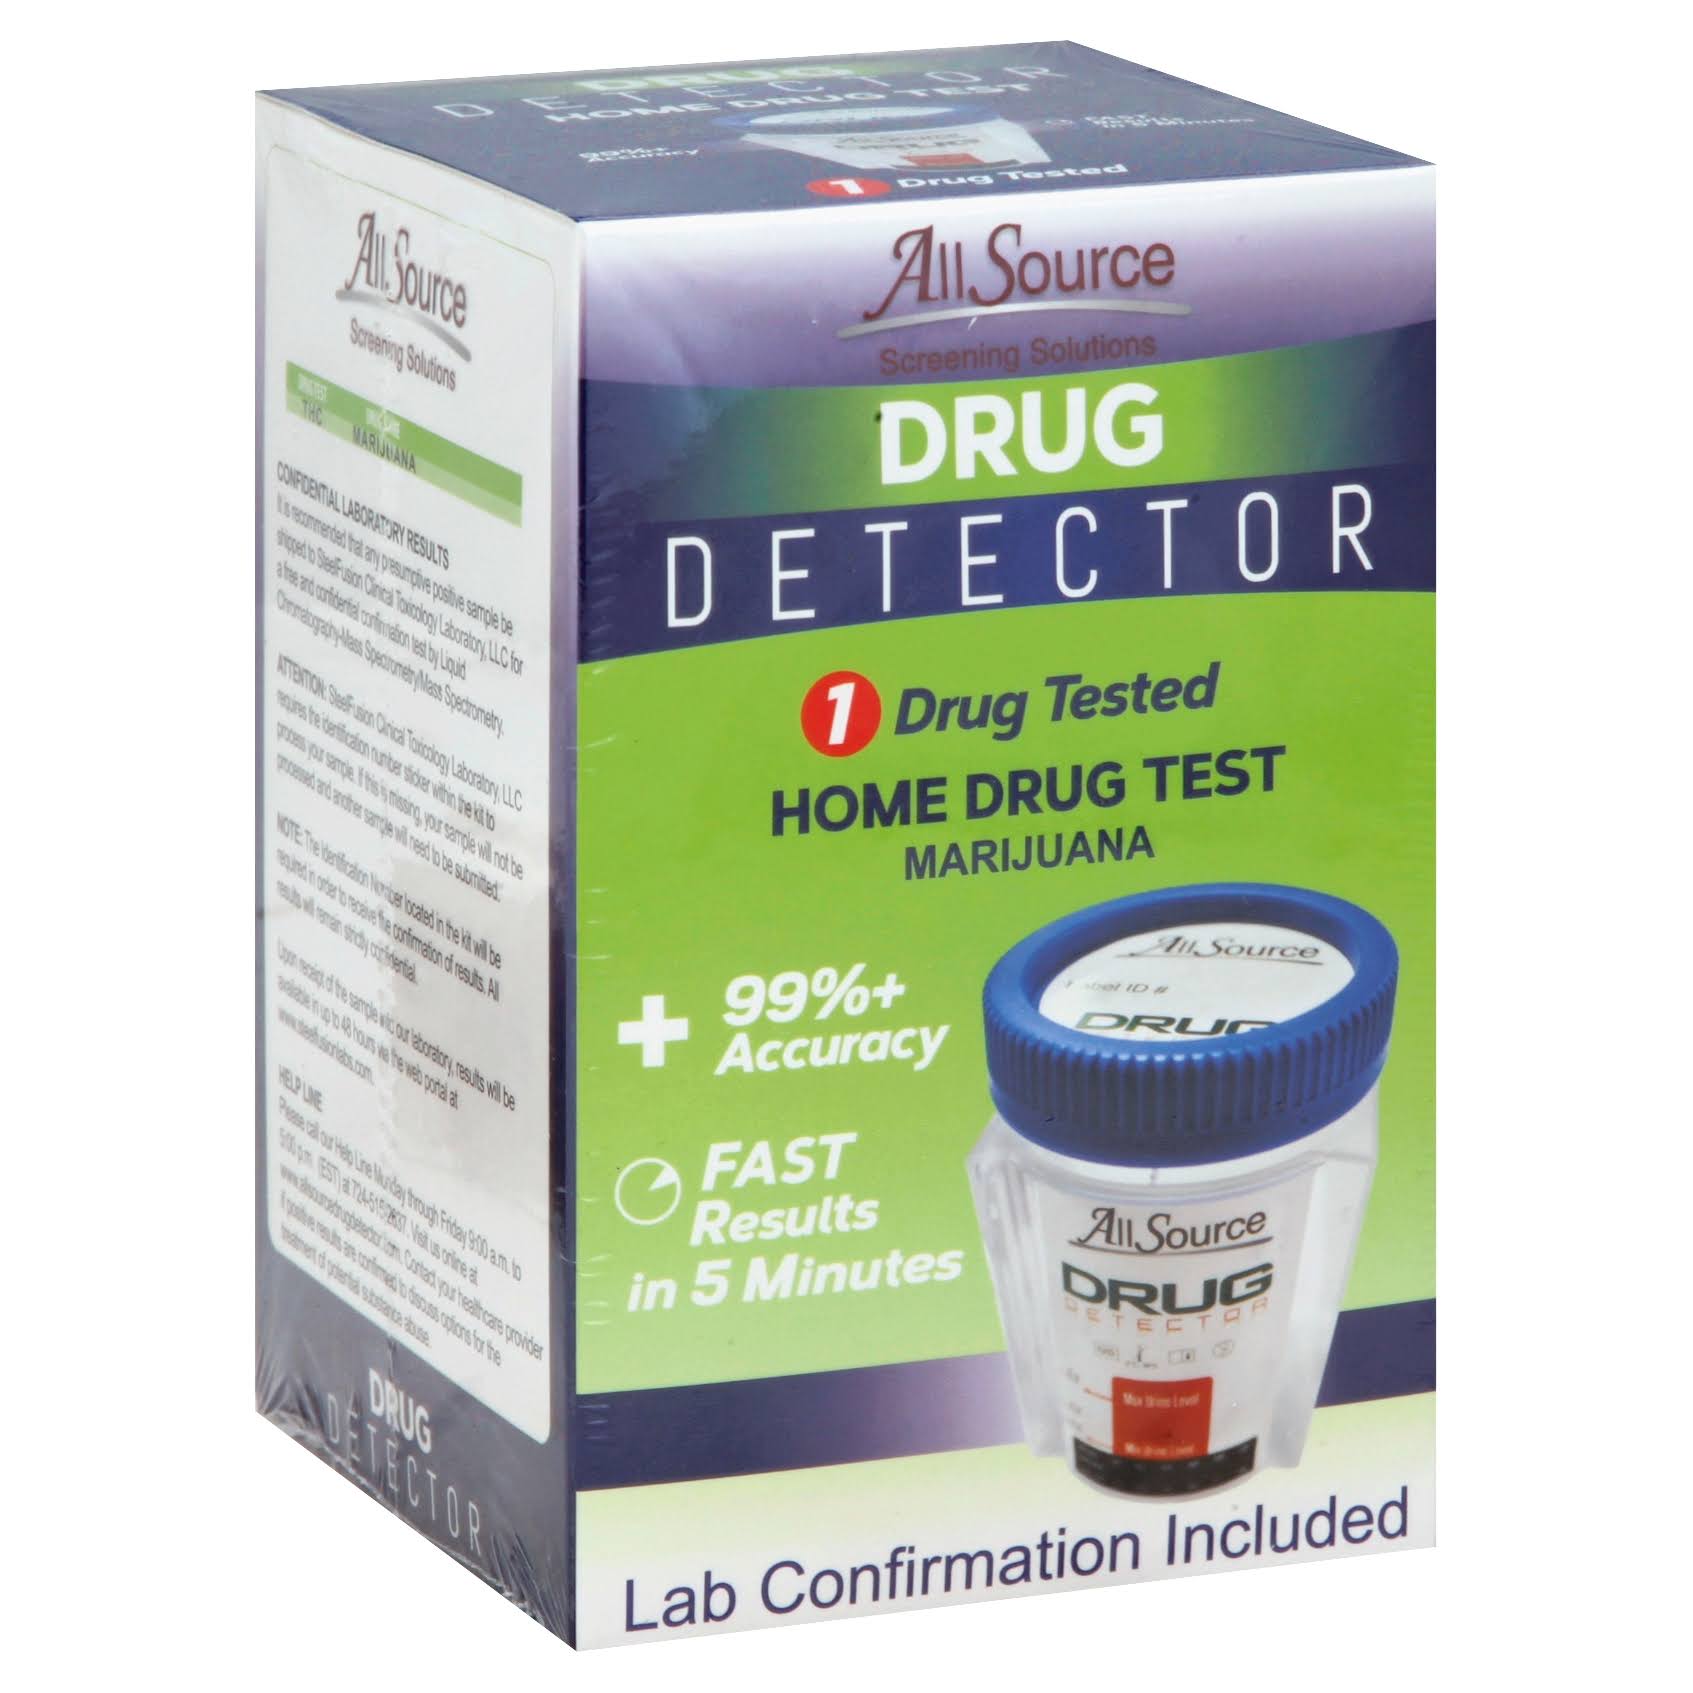 AllSource Drug Detector Home Drug Test, Marijuana